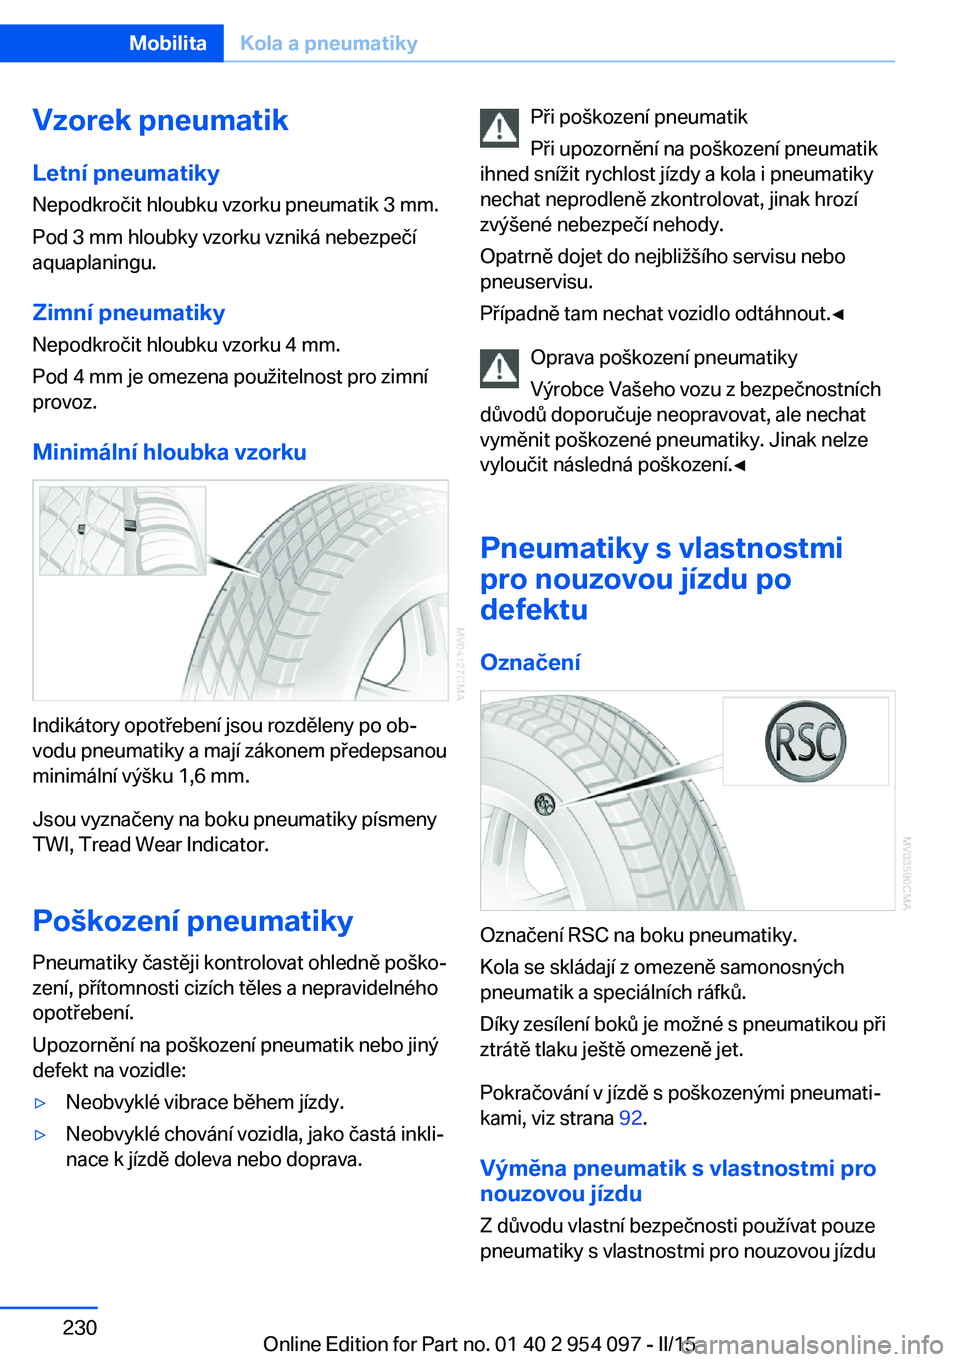 BMW Z4 2016  Návod na použití (in Czech) Vzorek pneumatik
Letní pneumatiky Nepodkročit hloubku vzorku pneumatik 3 mm.
Pod 3 mm hloubky vzorku vzniká nebezpečí
aquaplaningu.
Zimní pneumatiky
Nepodkročit hloubku vzorku 4 mm.
Pod 4 mm je